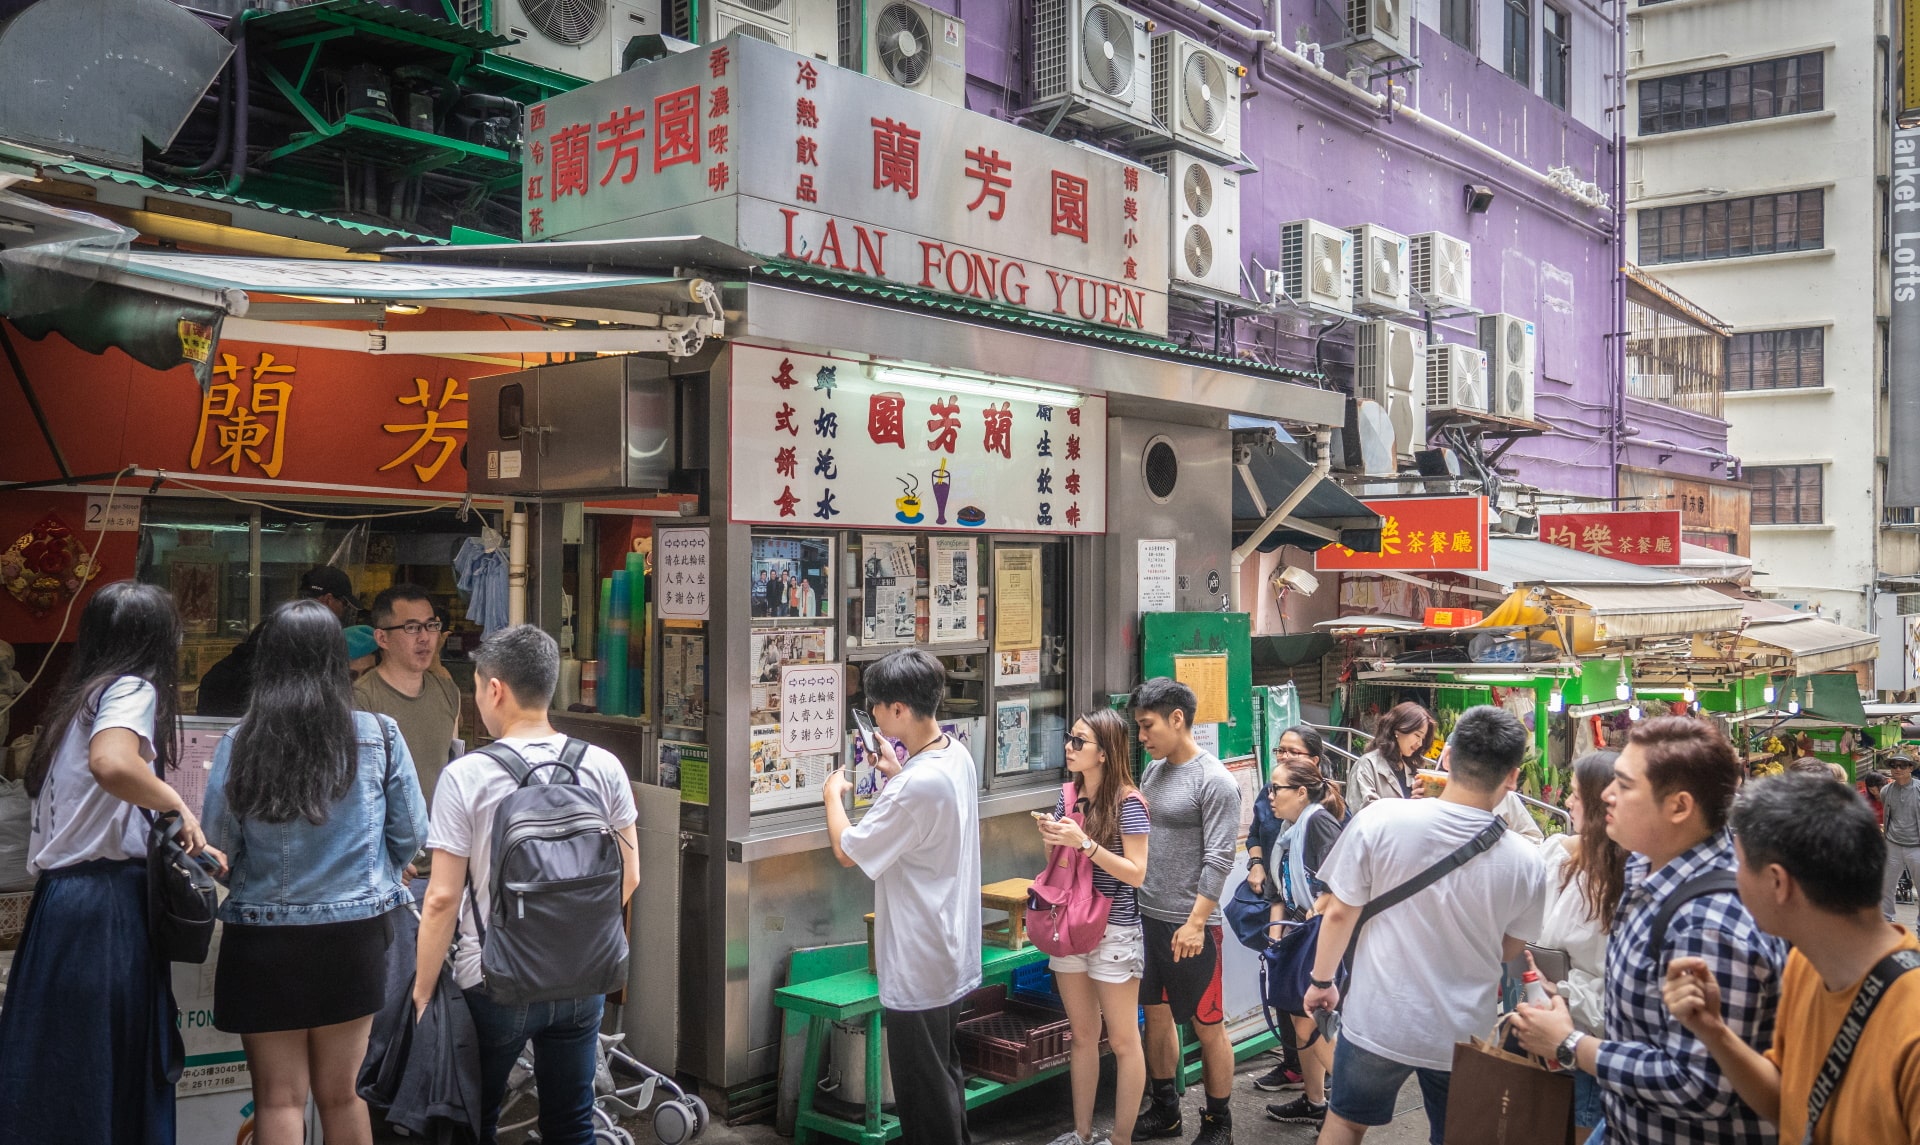 Lan Fong Yuen - The Origin of Hong Kong's Iconic Milk Tea